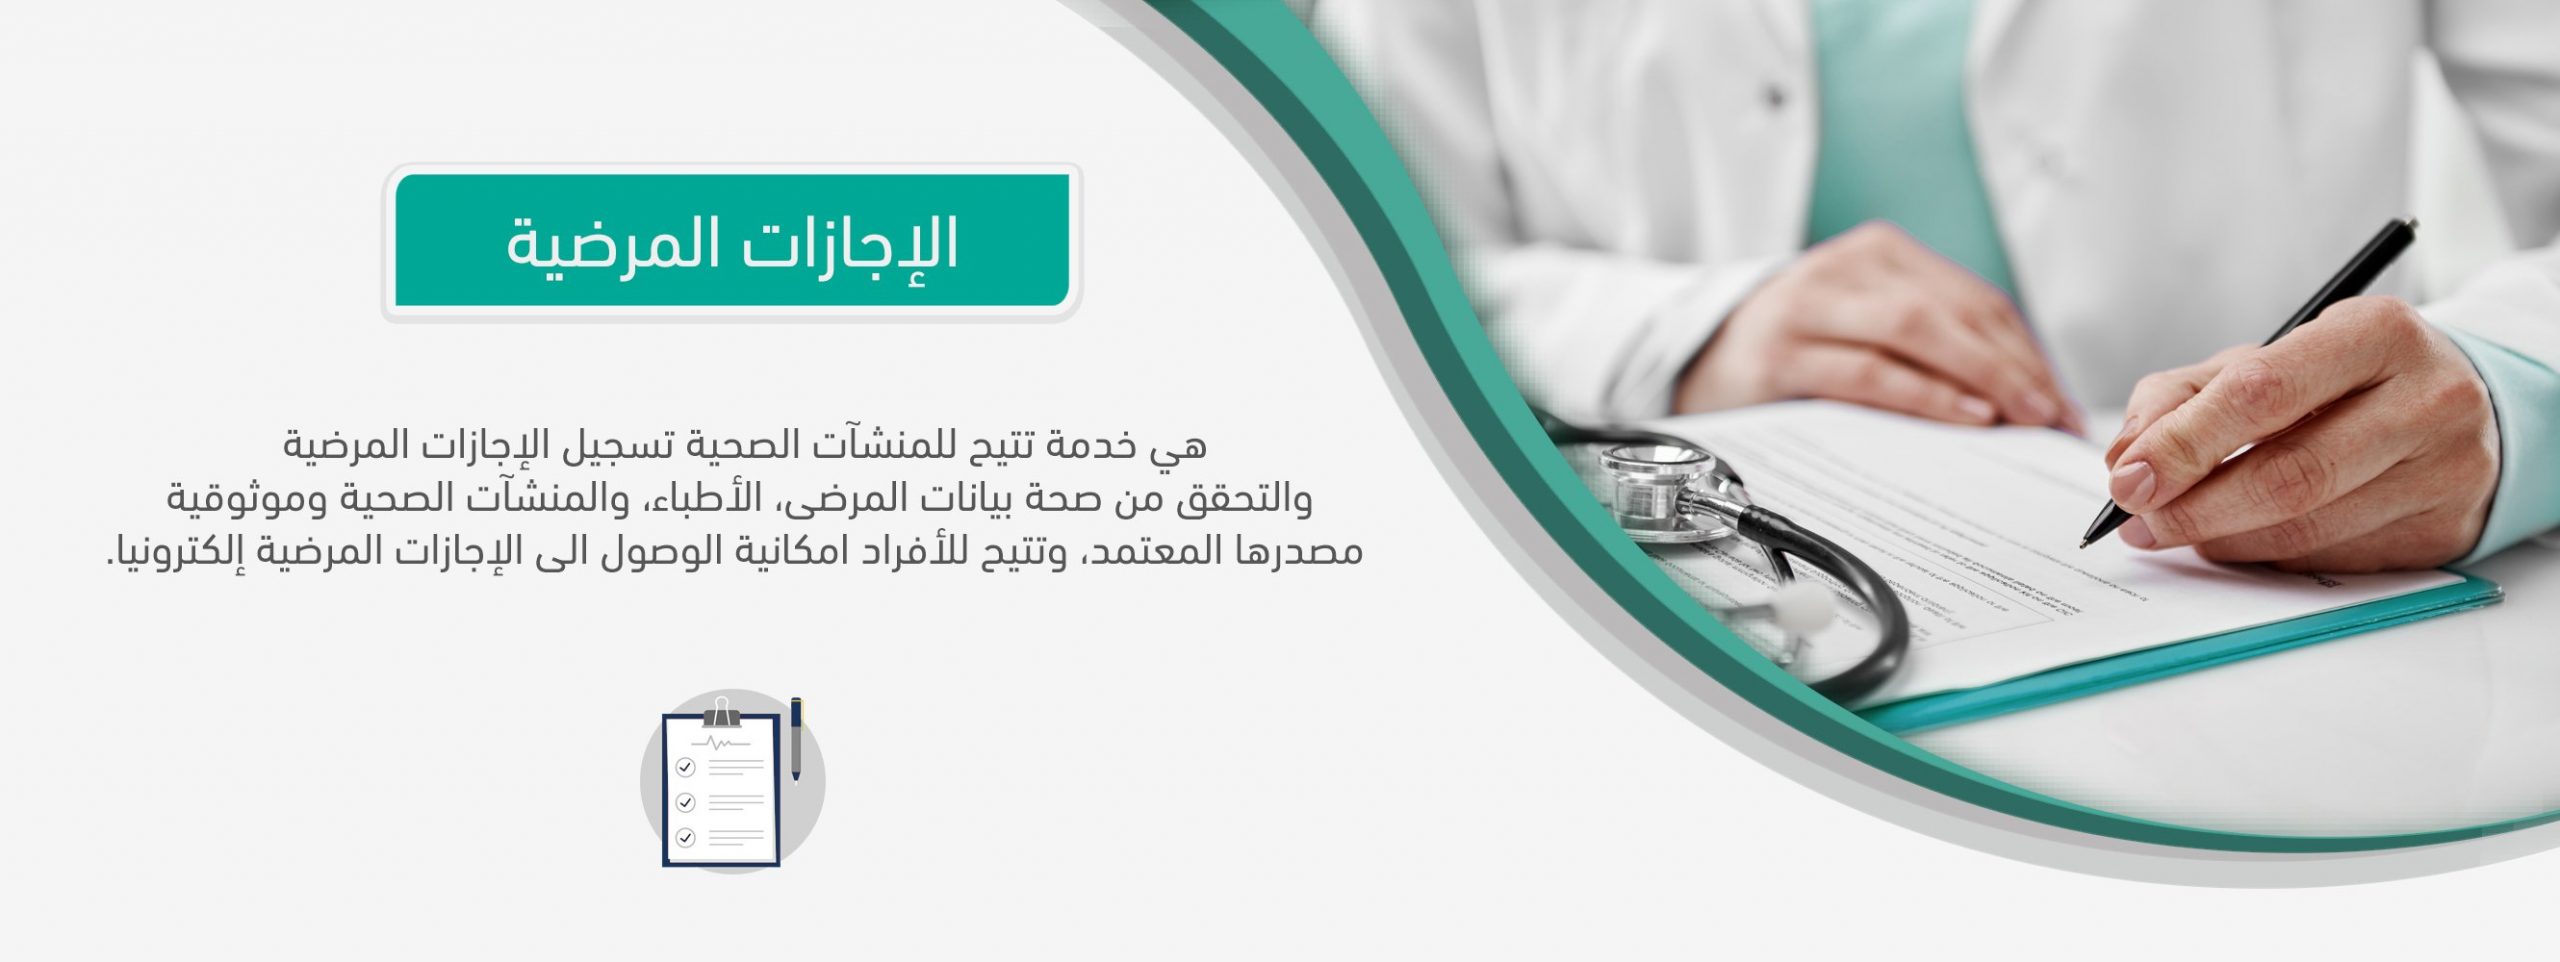 تسجيل إجازة مرضية عبر منصة صحة بالسعودية